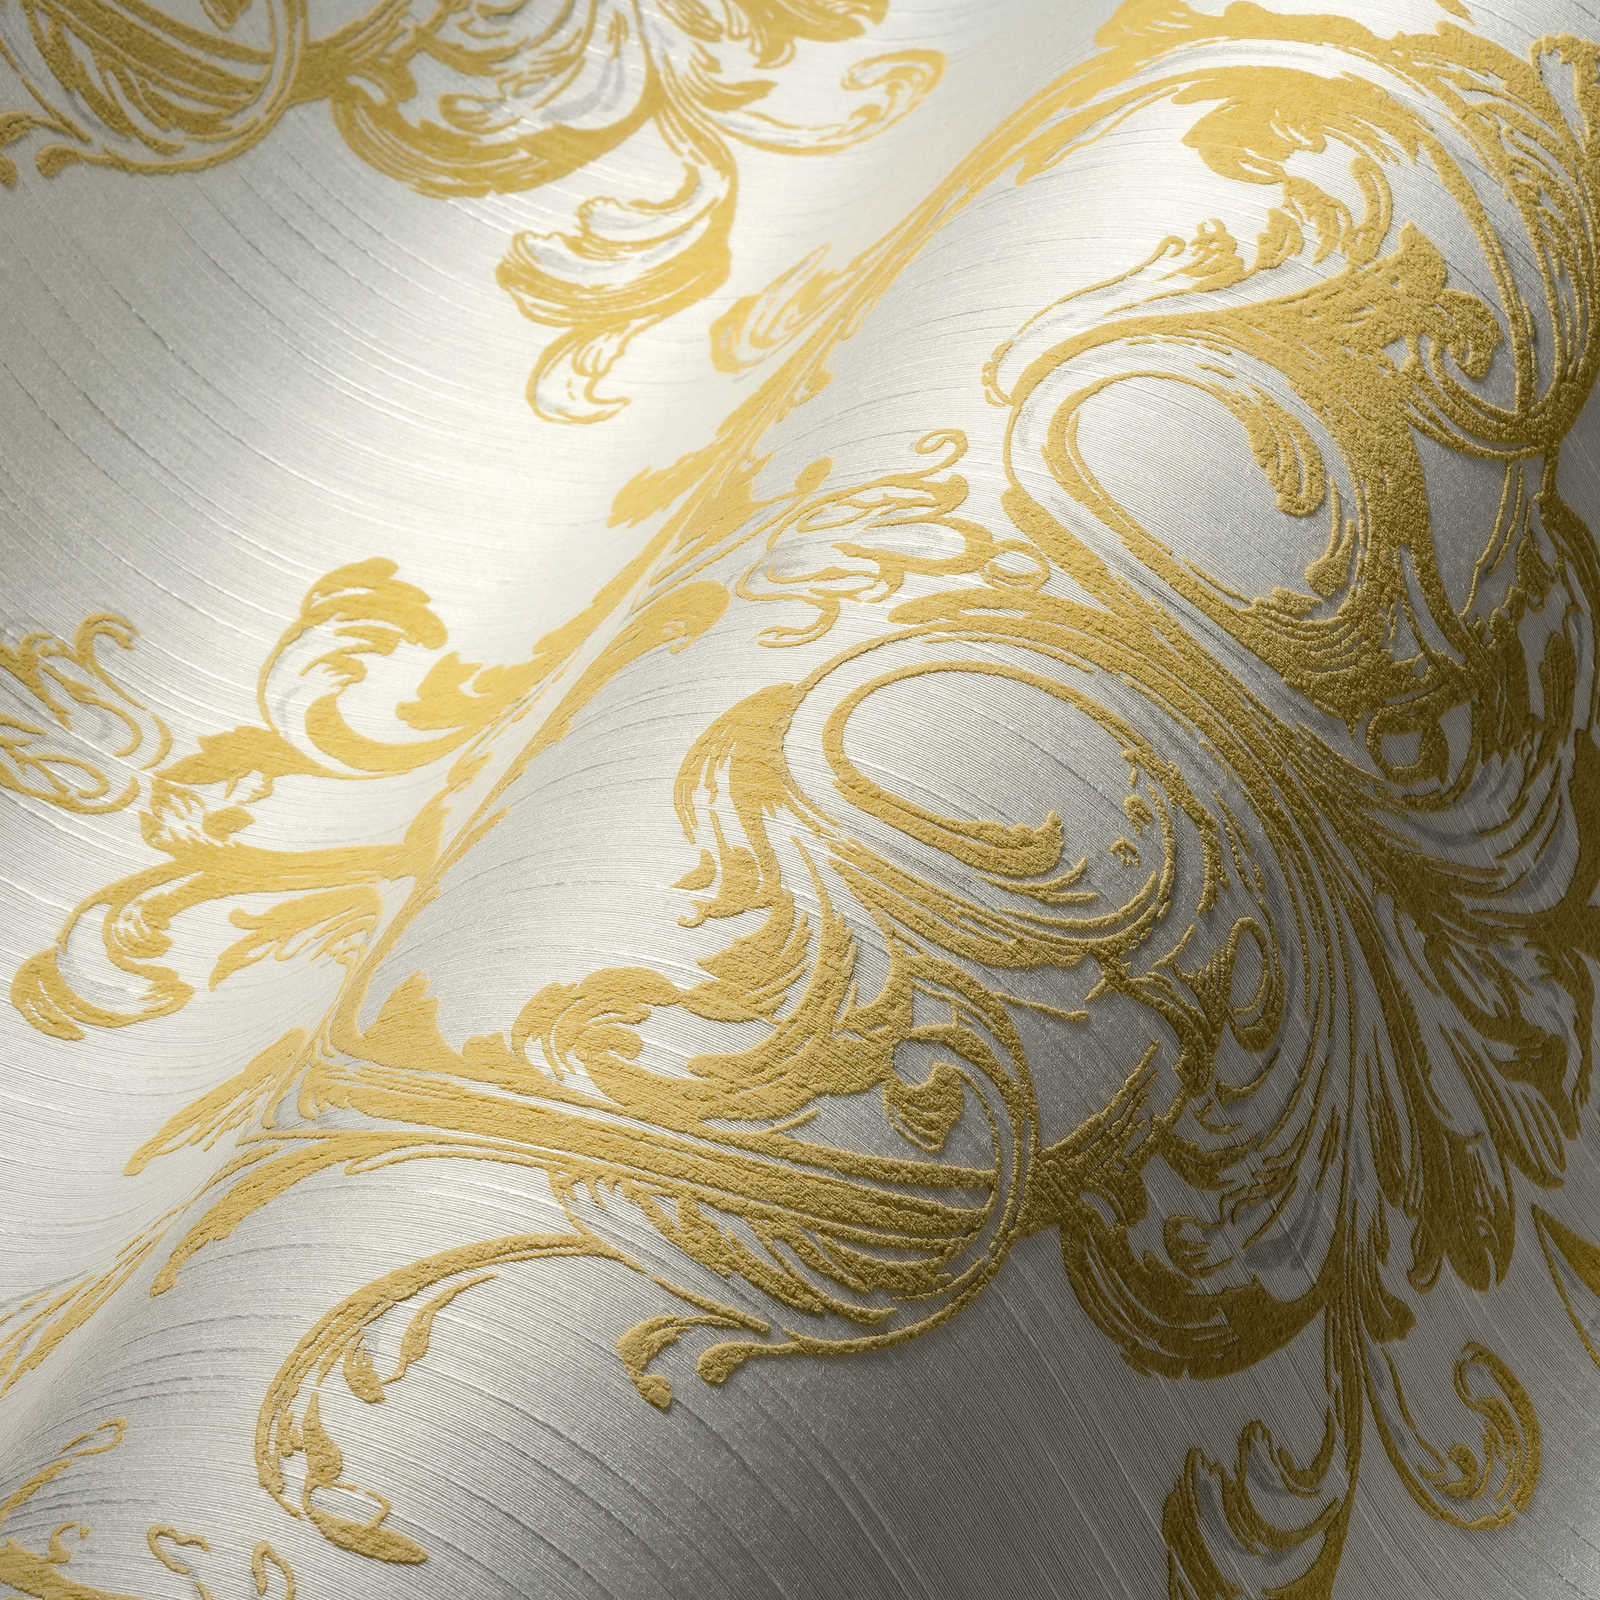             papel pintado no tejido diseño histórico de ornamento con efecto de estructura - oro, blanco
        